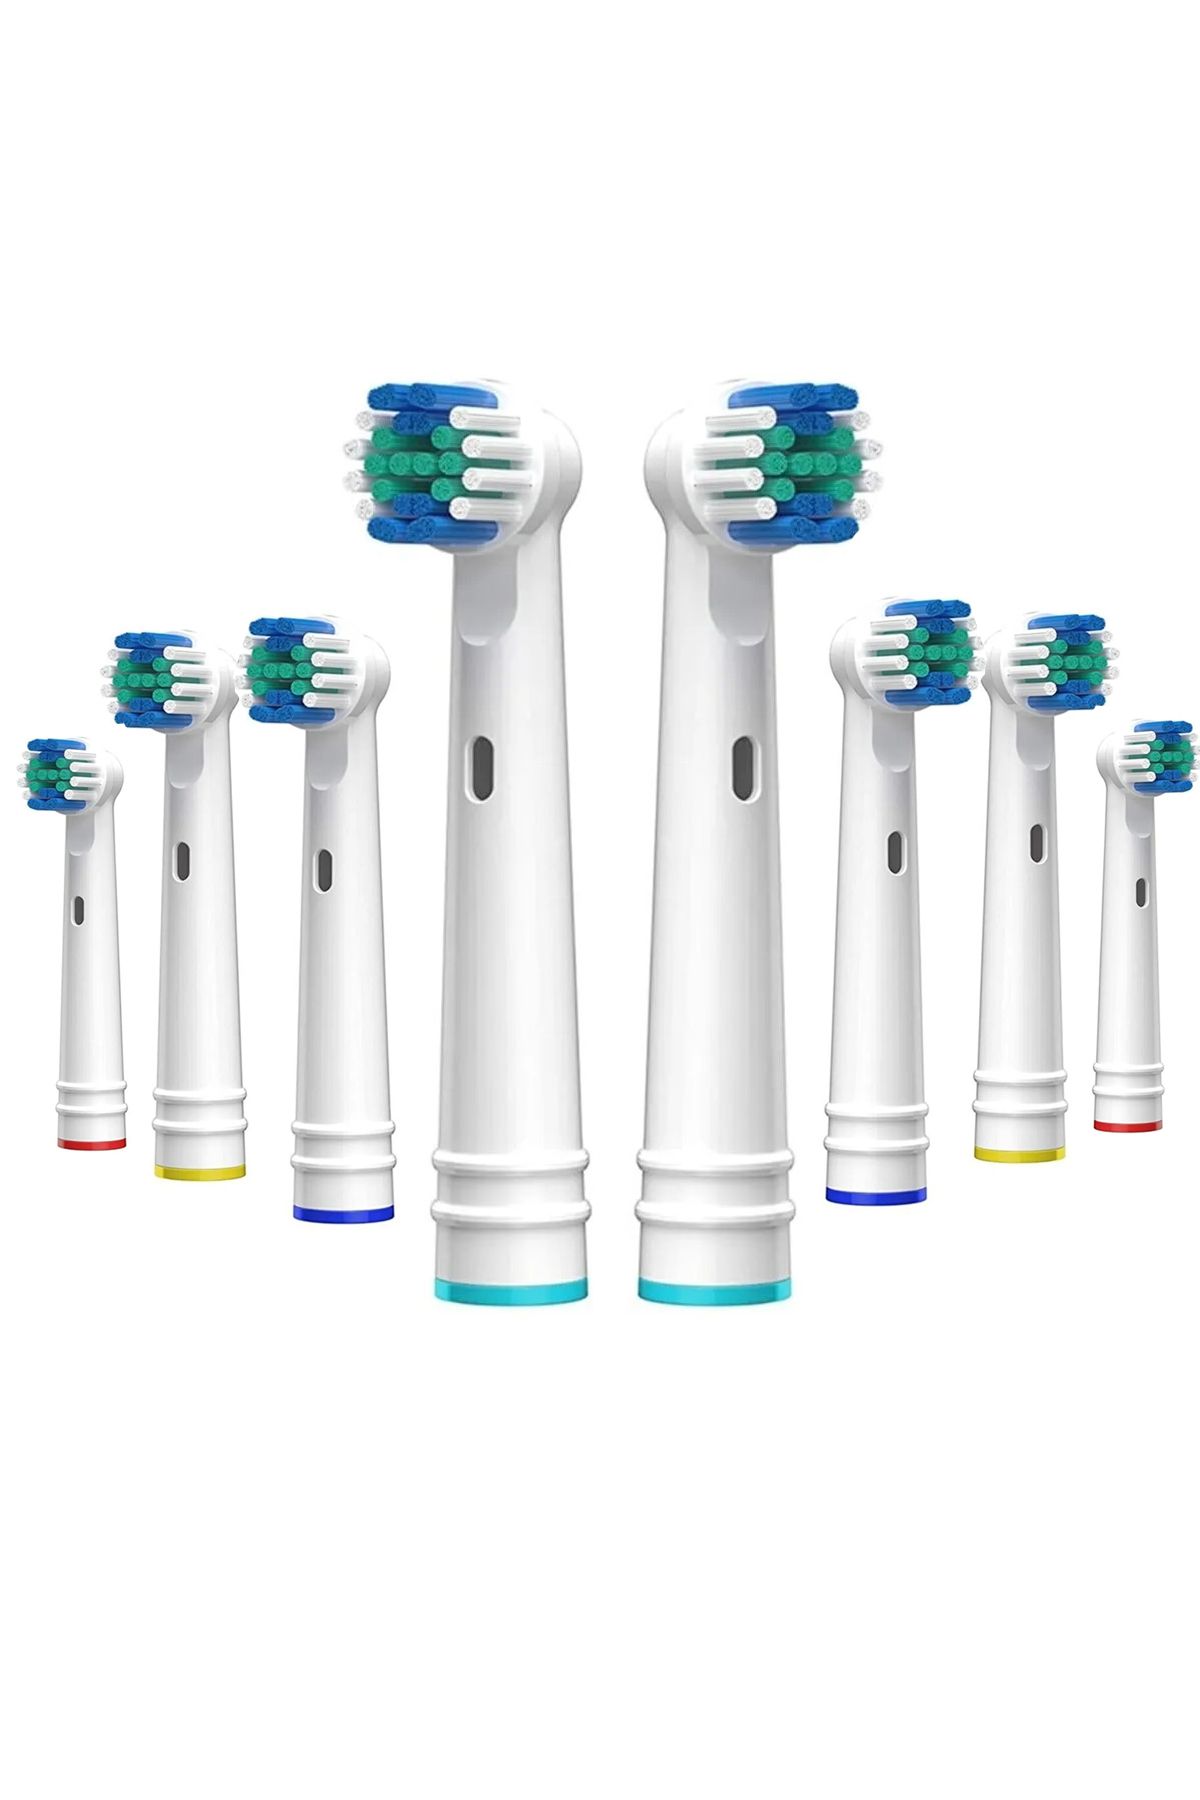 Benefse Yedek Başlık Şarjlı Ve Pilli Diş Fırçası Philips Oral-b Braun Uyumlu Orta Sert 8 Li Muadil Set